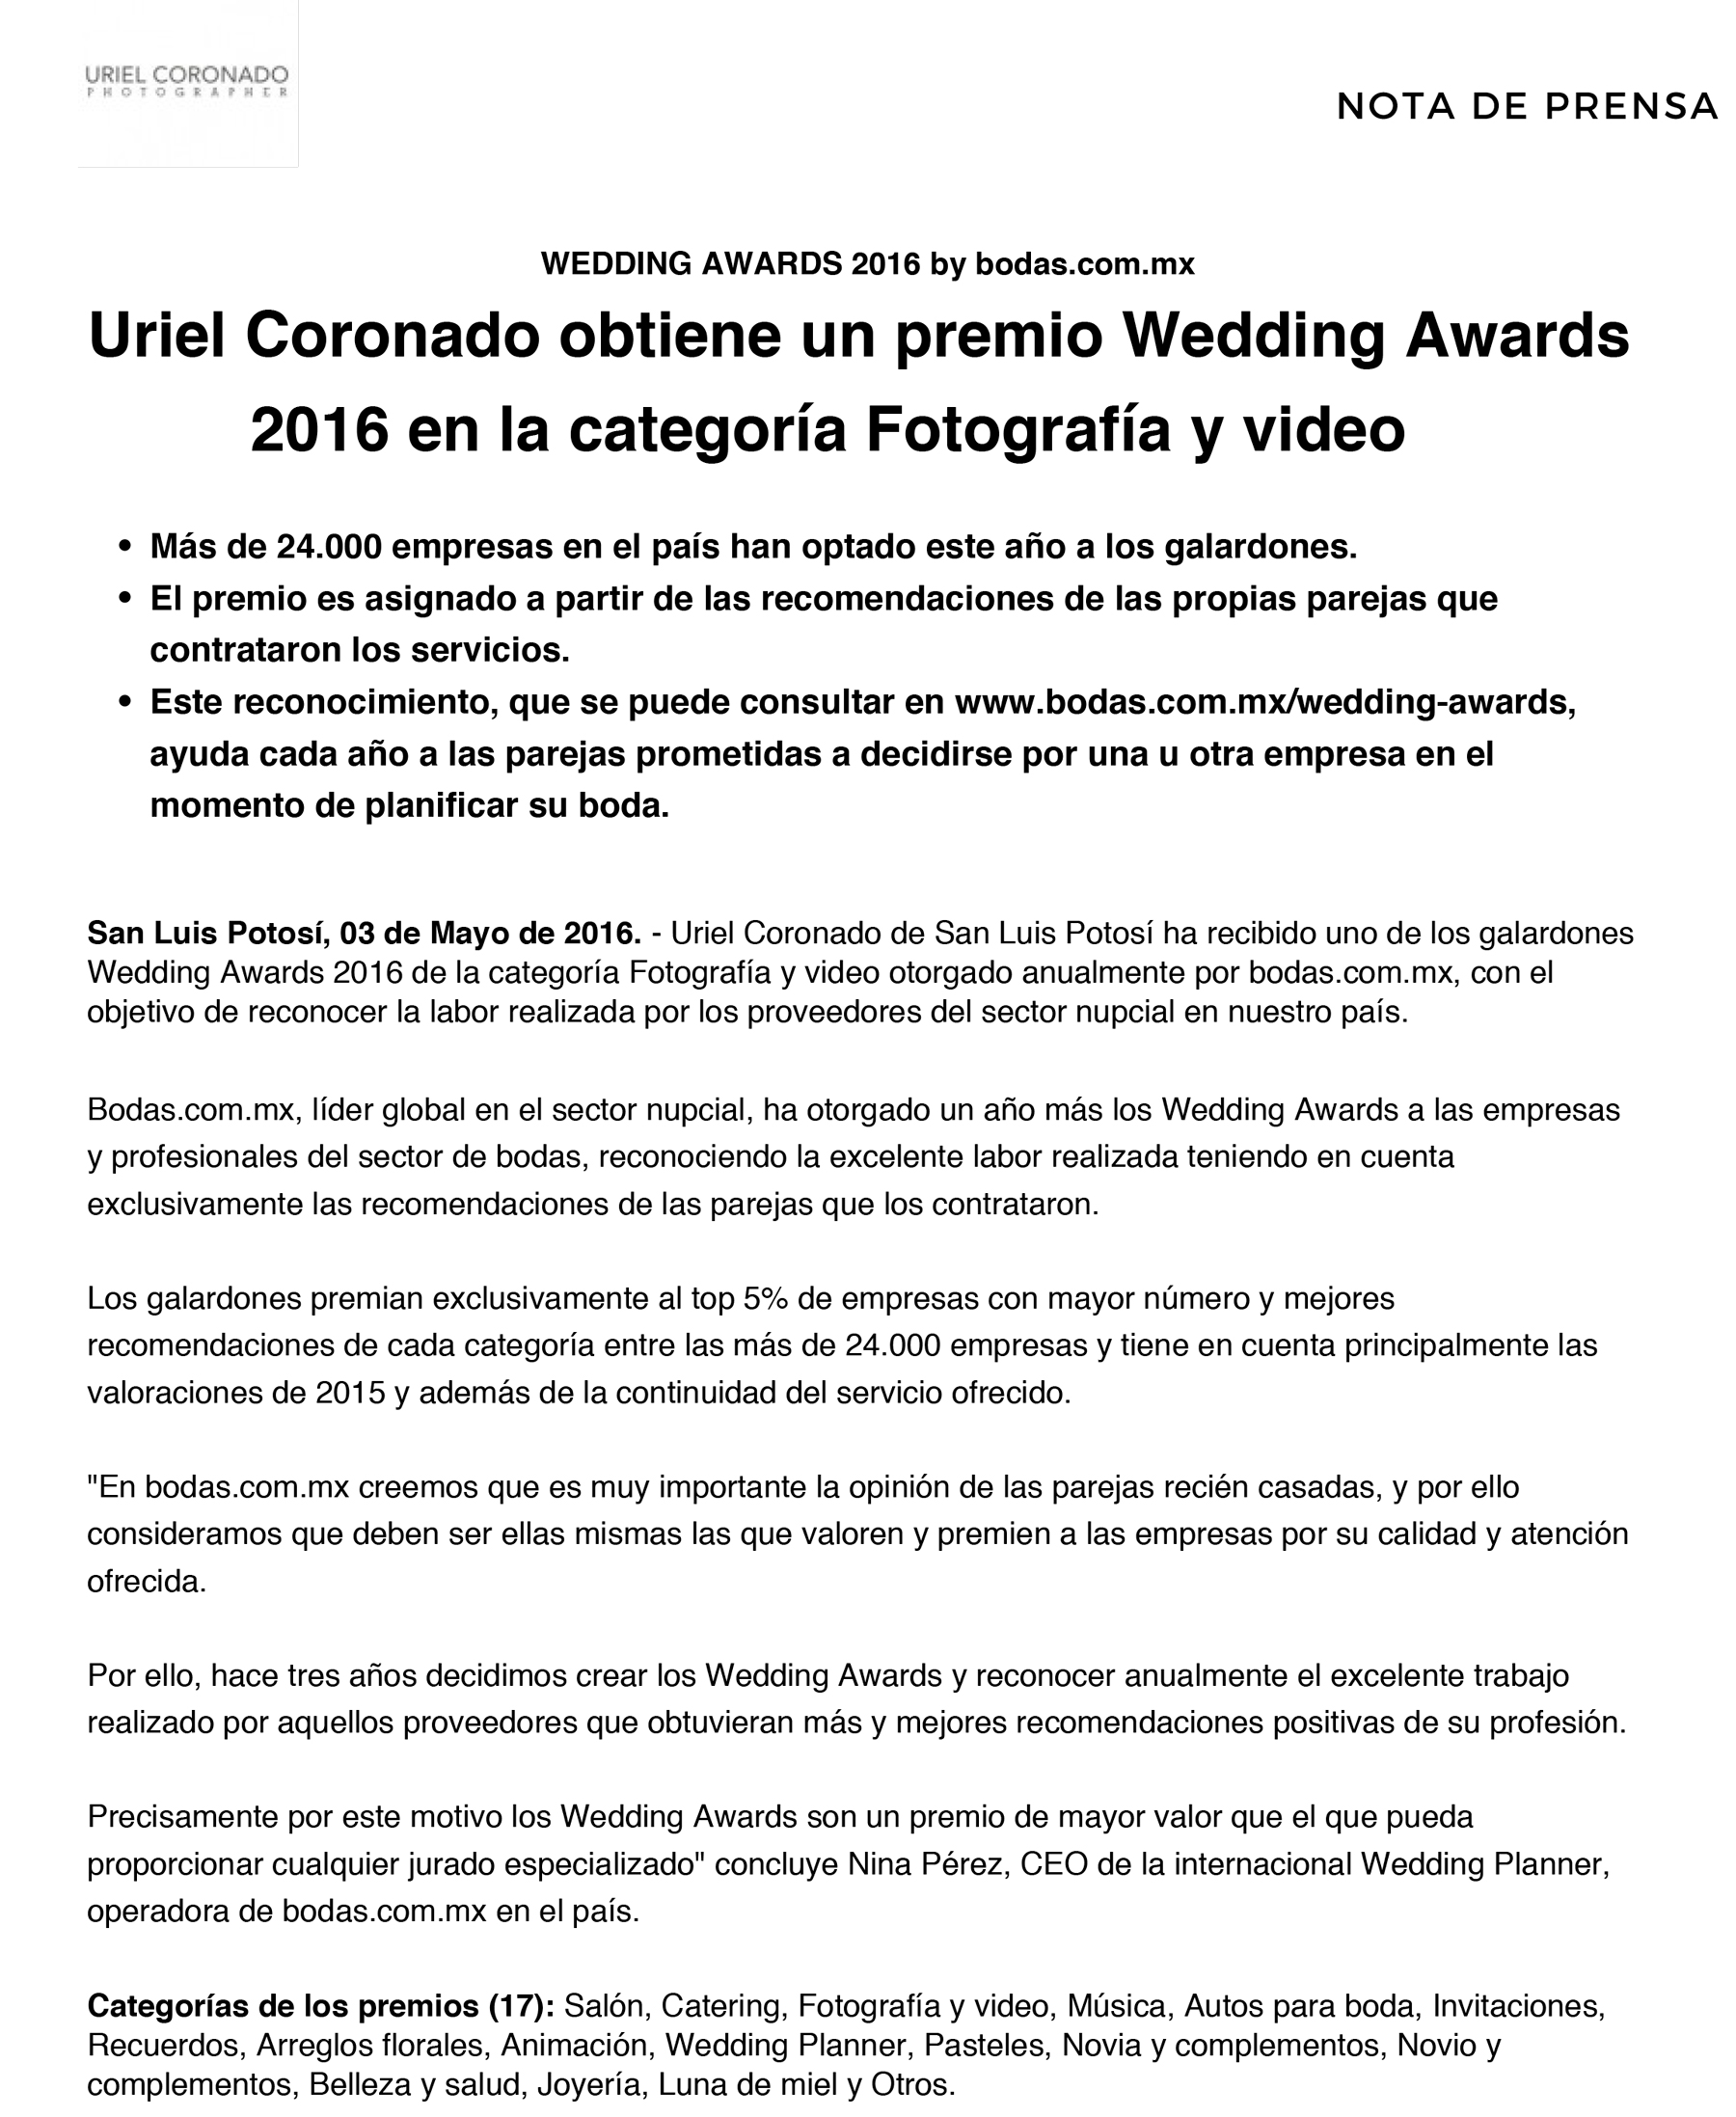 Wedding_Awards_2016_Nota_de_Prensa-1-Uriel-Coronado-San-Luis-Potosi